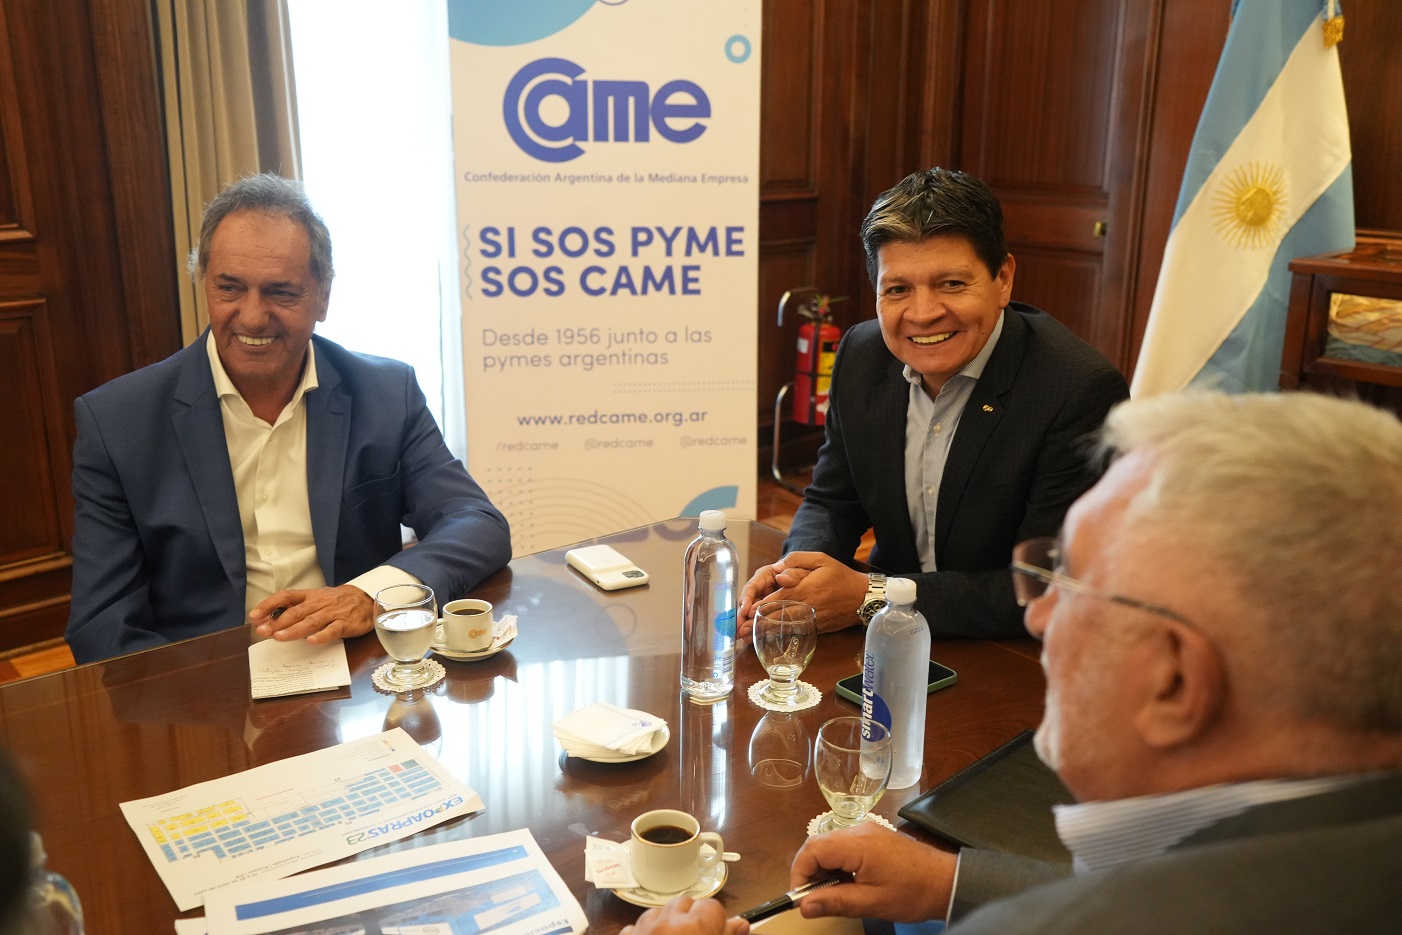 CAME y Scioli trabajan para la inserción de las pymes argentinas en el mercado brasileño. Ricardo Diab participó de la reunión.